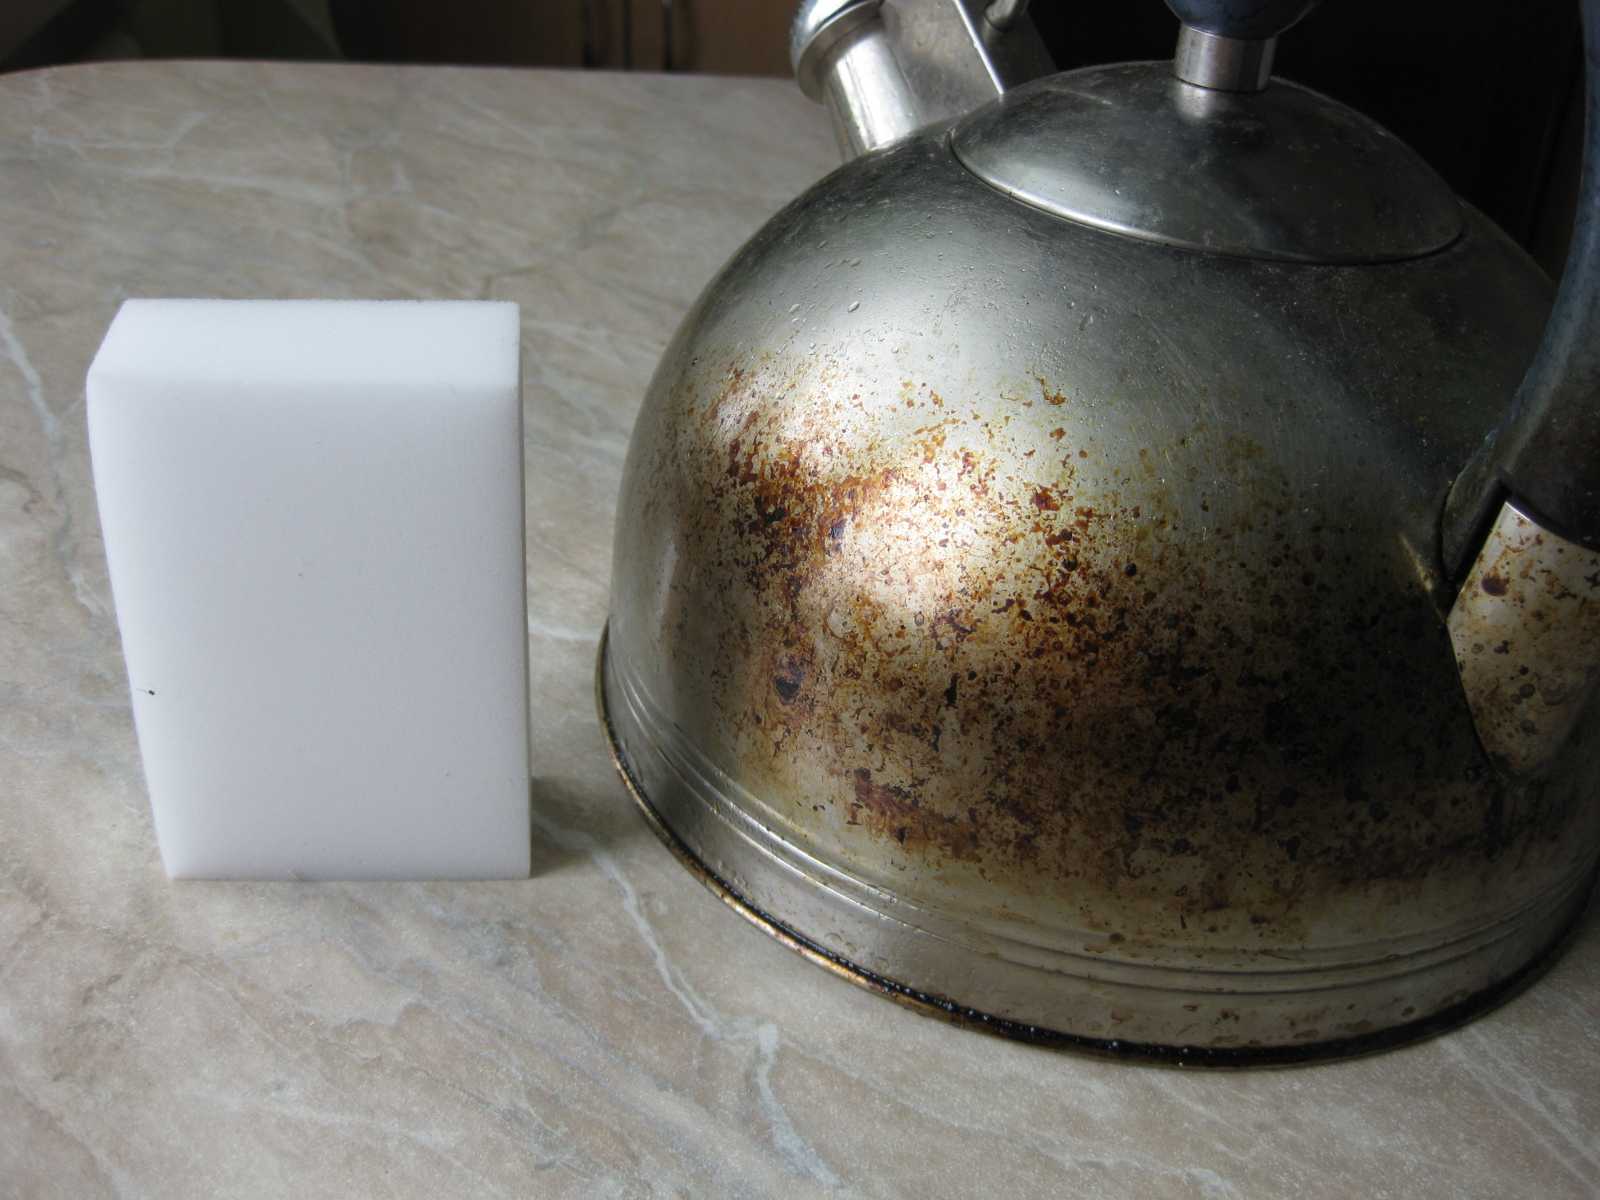 Эффективные меры по устранению ржавчины внутри чайника. как очистить чайник от накипи: эффективные способы в домашних условиях. как легко и быстро очистить чайник от накипи подручными средствами